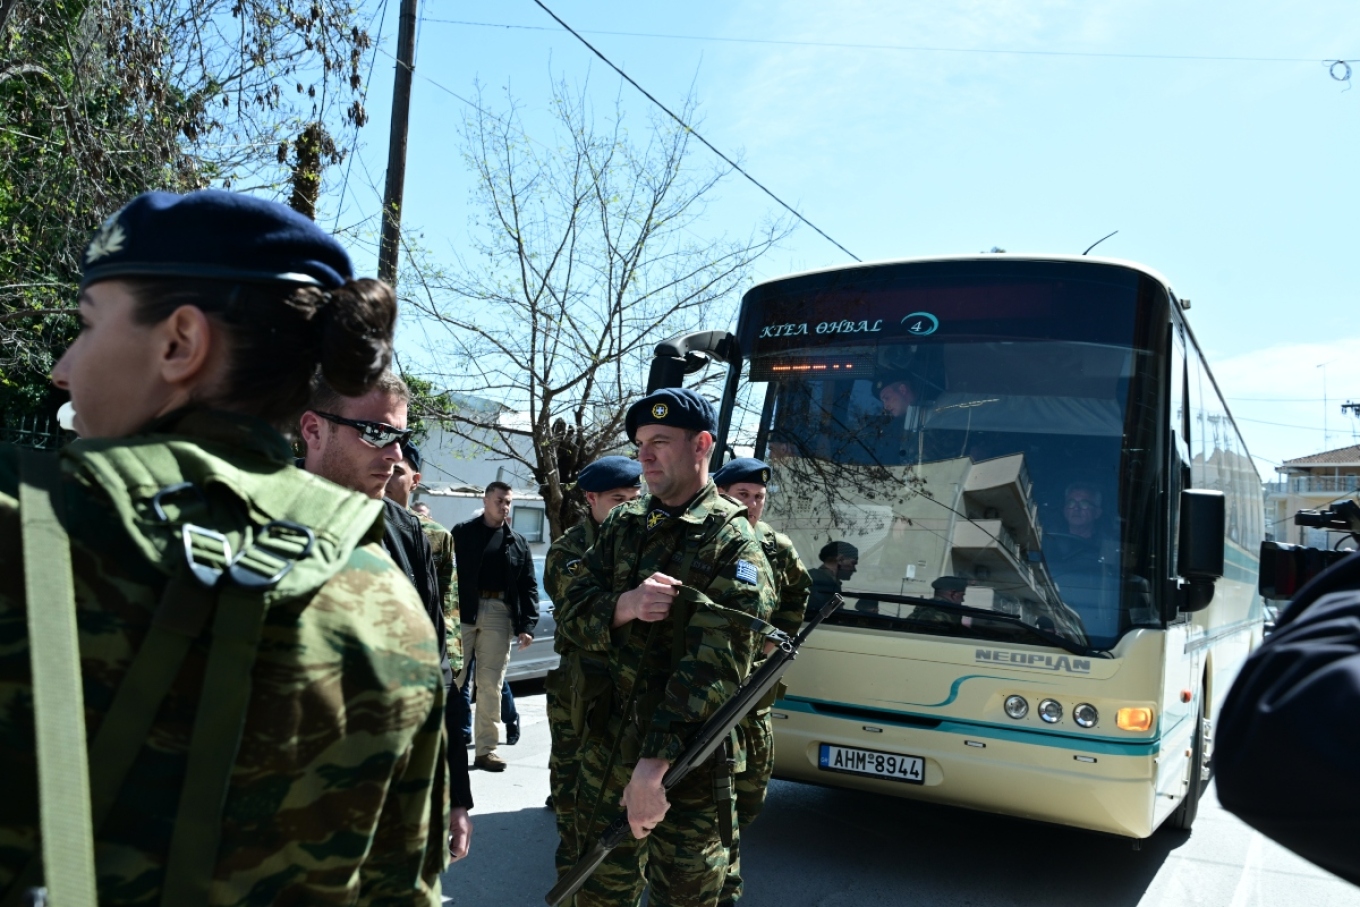 Στον κεντρικό δρόμο της Θήβας παρέλασε στις 12 το μεσημέρι ο Στέφανος Κασσελάκης, με αφορμή τον εορτασμό της εθνικής επετείου της 25ης Μαρτίου. O πρόεδρος του ΣΥΡΙΖΑ συμμετείχε σε στρατιωτικό άγημα 36 ατόμων που, κατά πληροφορίες, αποτελούνταν από νεοσύλλεκτους του Κέντρου Εκπαίδευσης στη Θήβα.